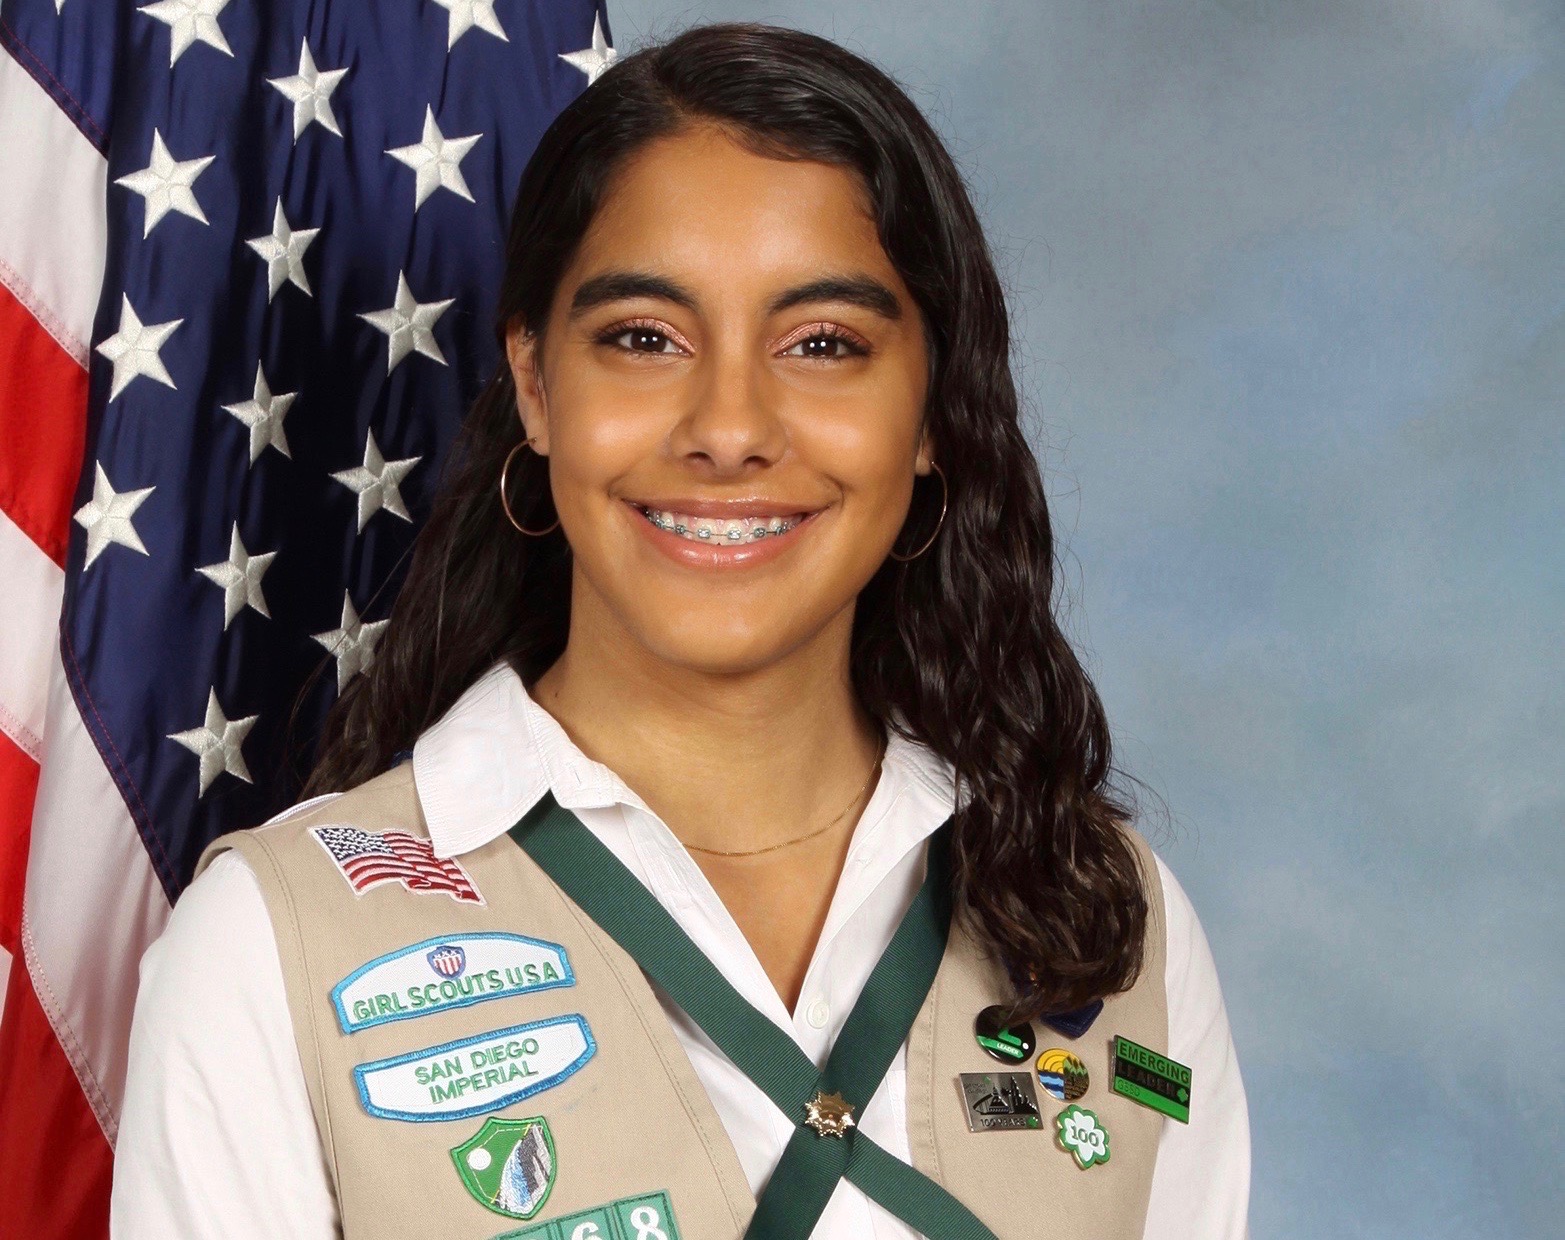 Ana De Almeida Amaral has been named a 2019 National Gold Award Girl Scout.